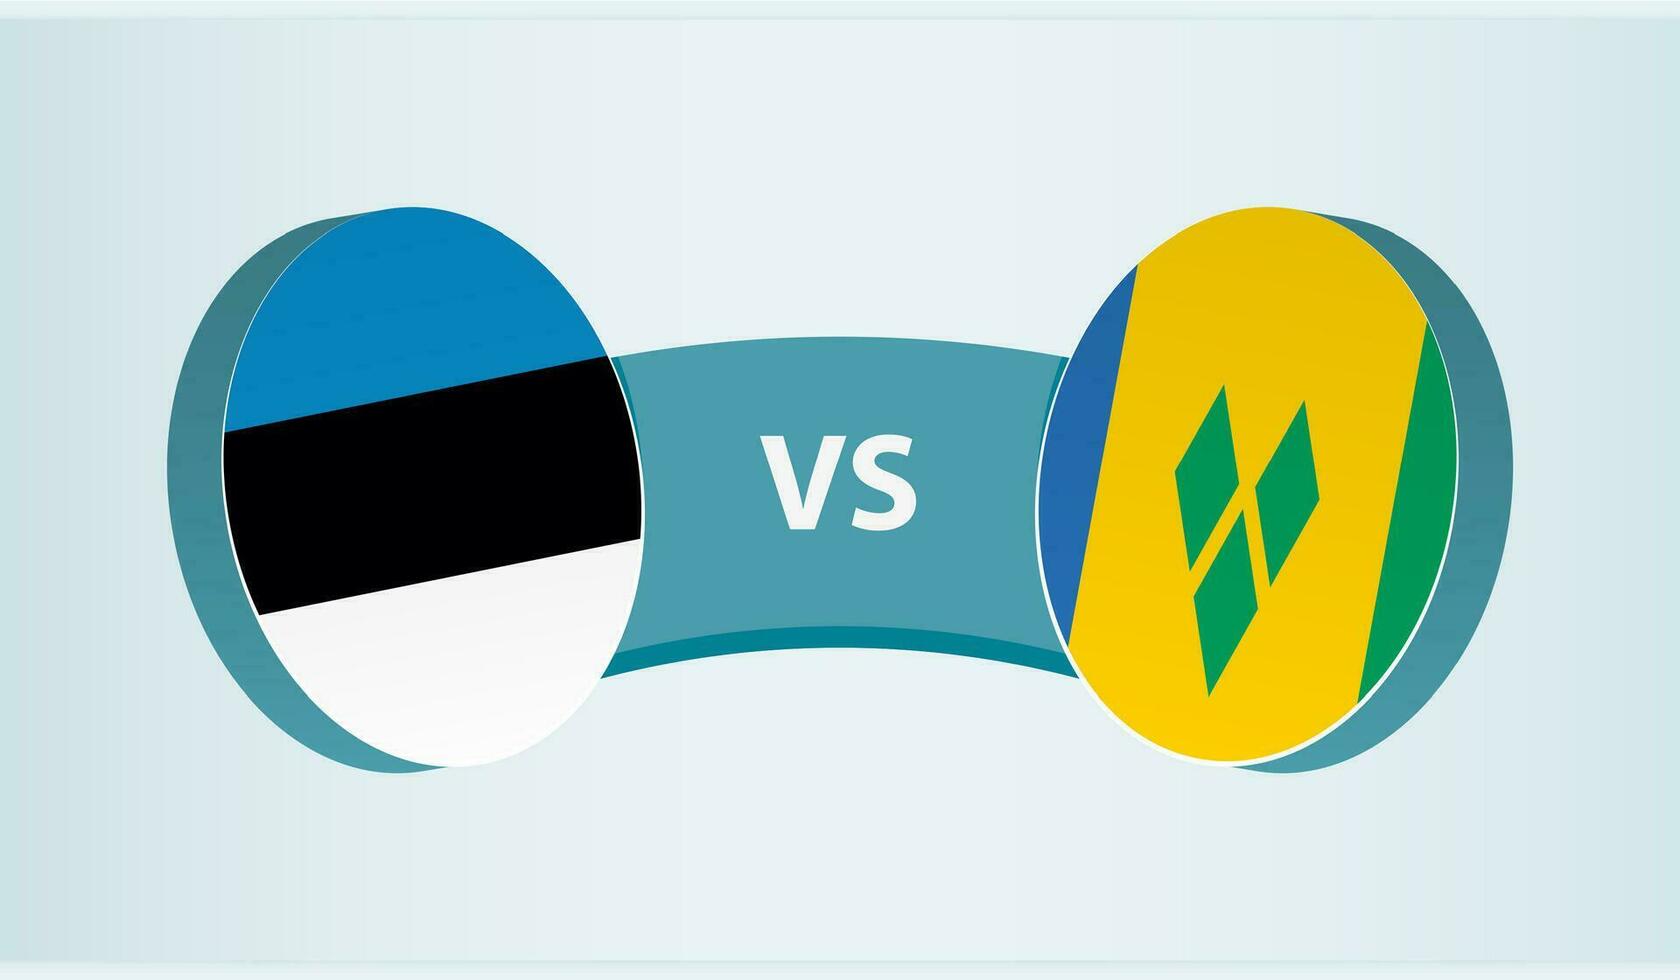 Estônia versus santo Vincent e a granadinas, equipe Esportes concorrência conceito. vetor